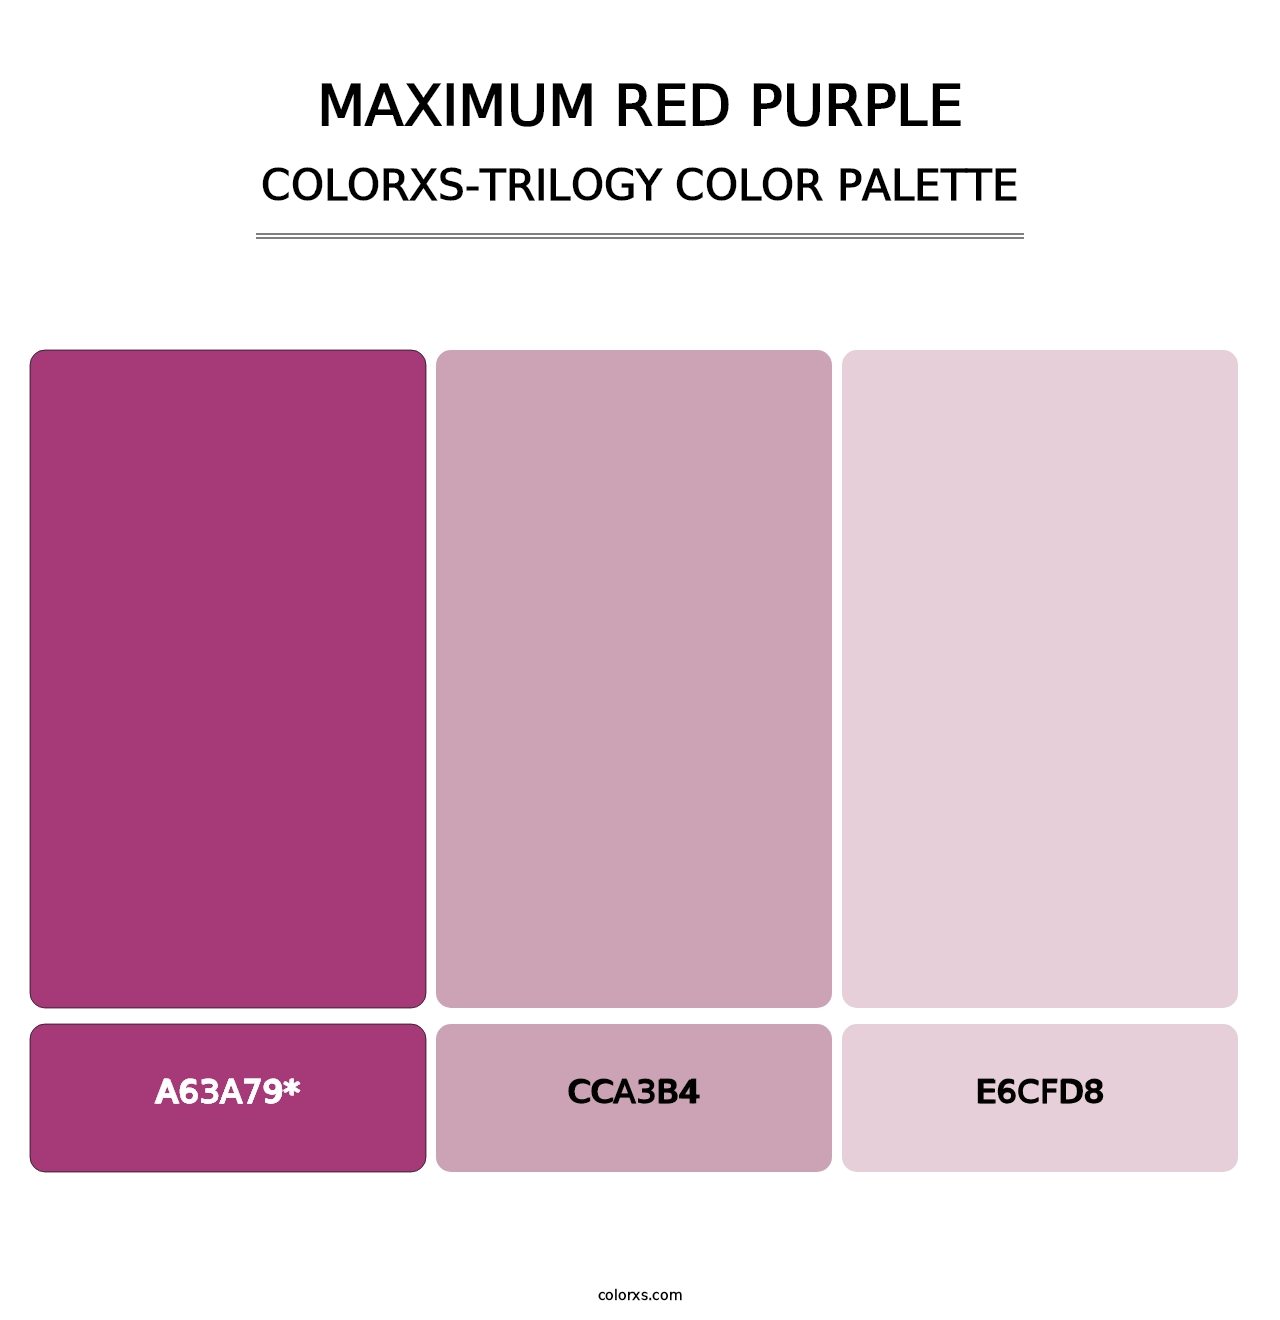 Maximum Red Purple - Colorxs Trilogy Palette